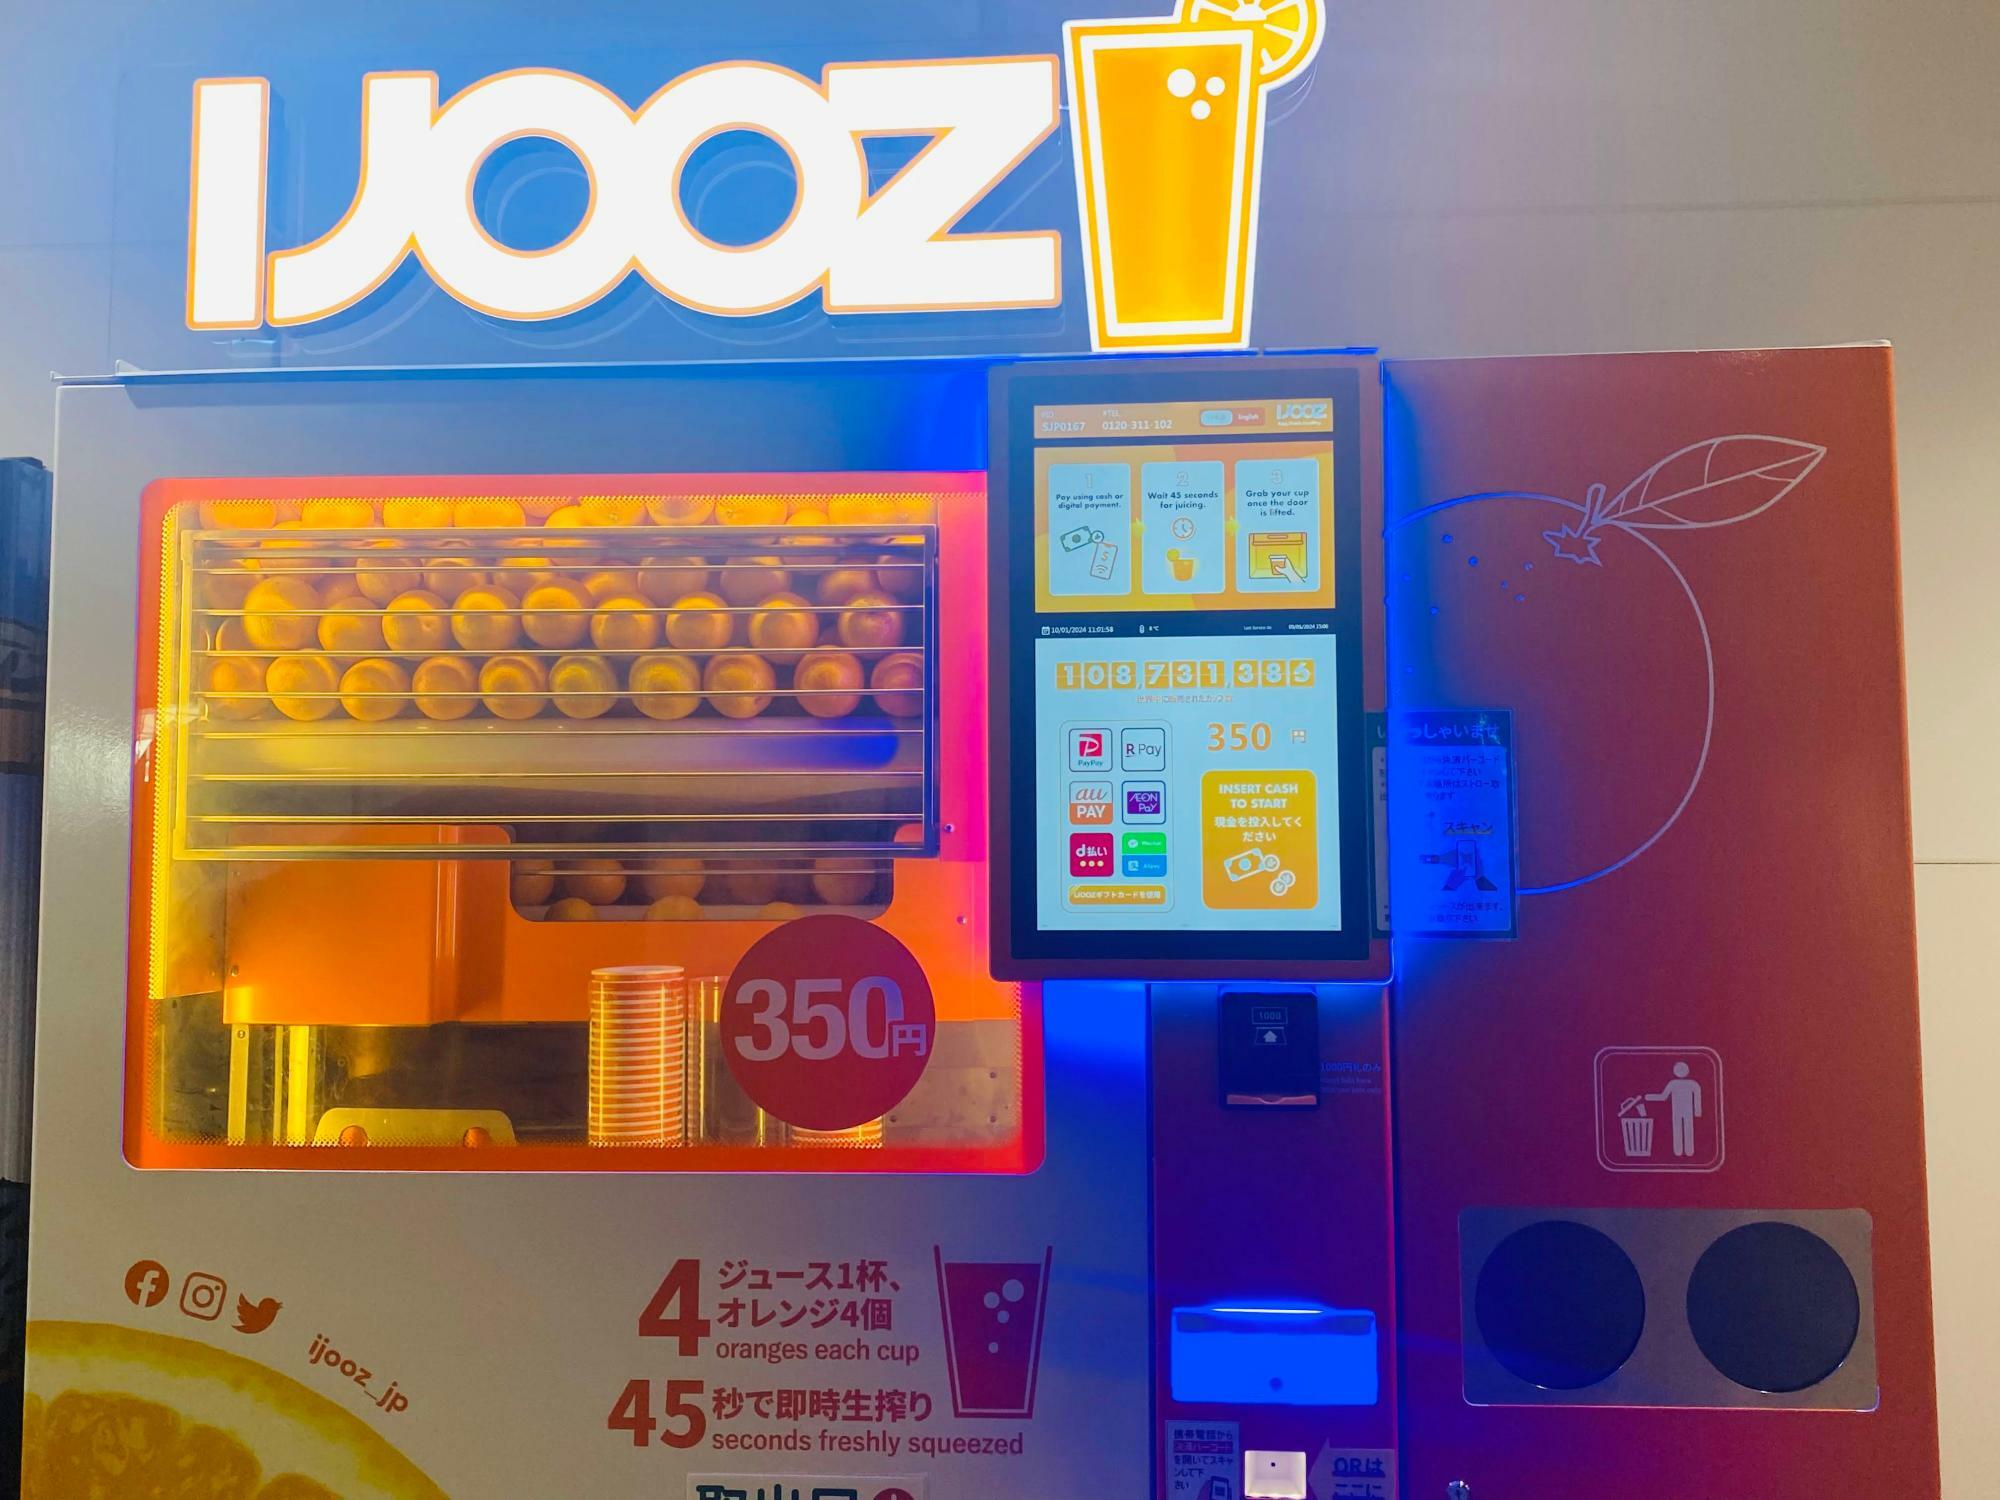 シンガポール発! 世界人気No.1の生搾りオレンジジュース自動販売機「IJOOZ」